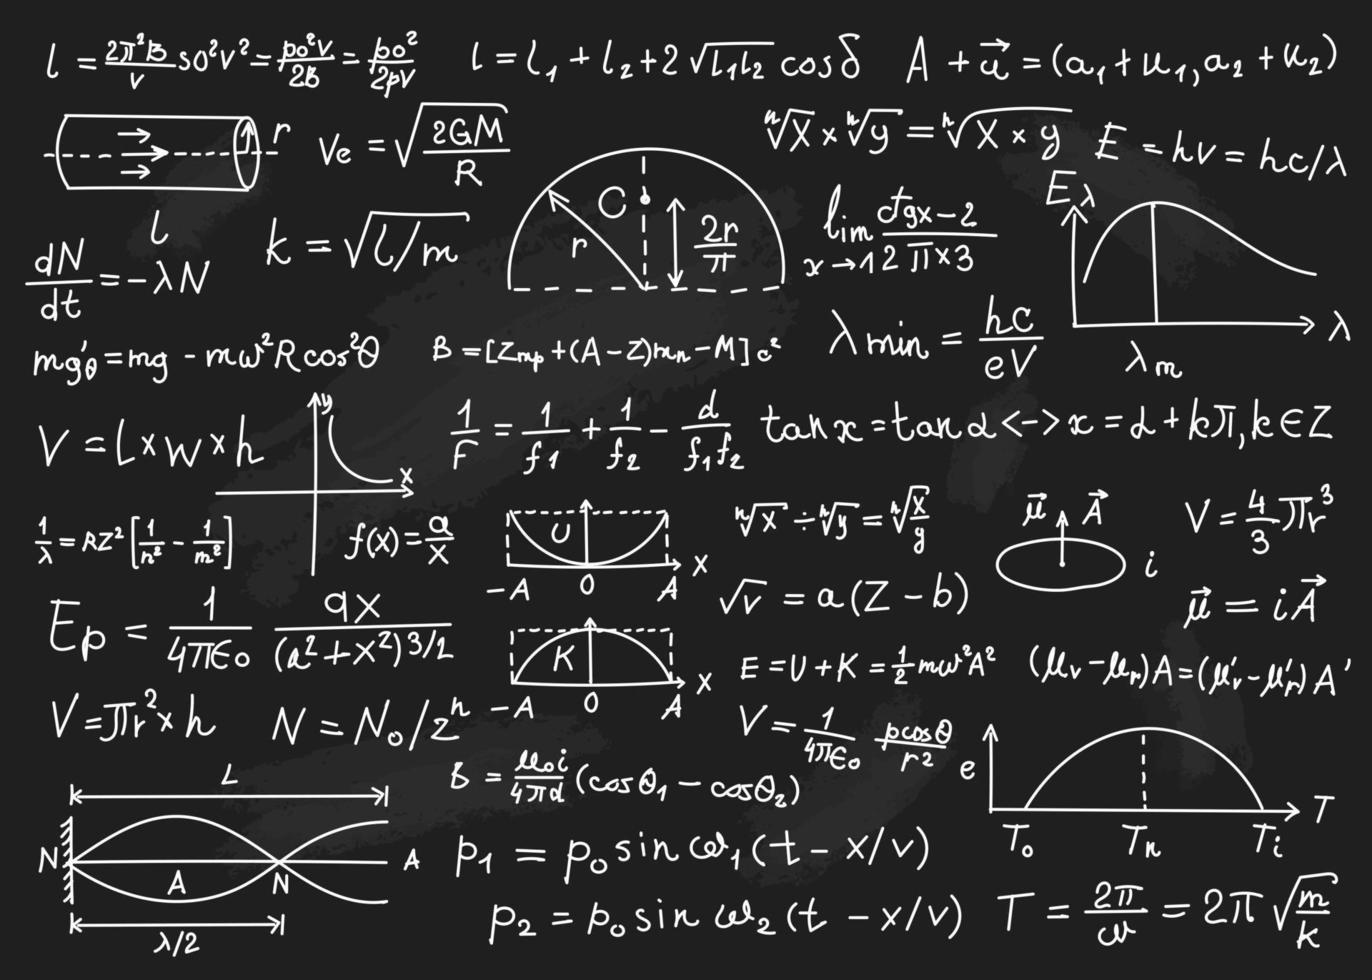 fysica formules. wiskundig vergelijkingen, fysica theorieën, rekenkundig berekeningen. schoolbord met wetenschappelijk formules vector achtergrond